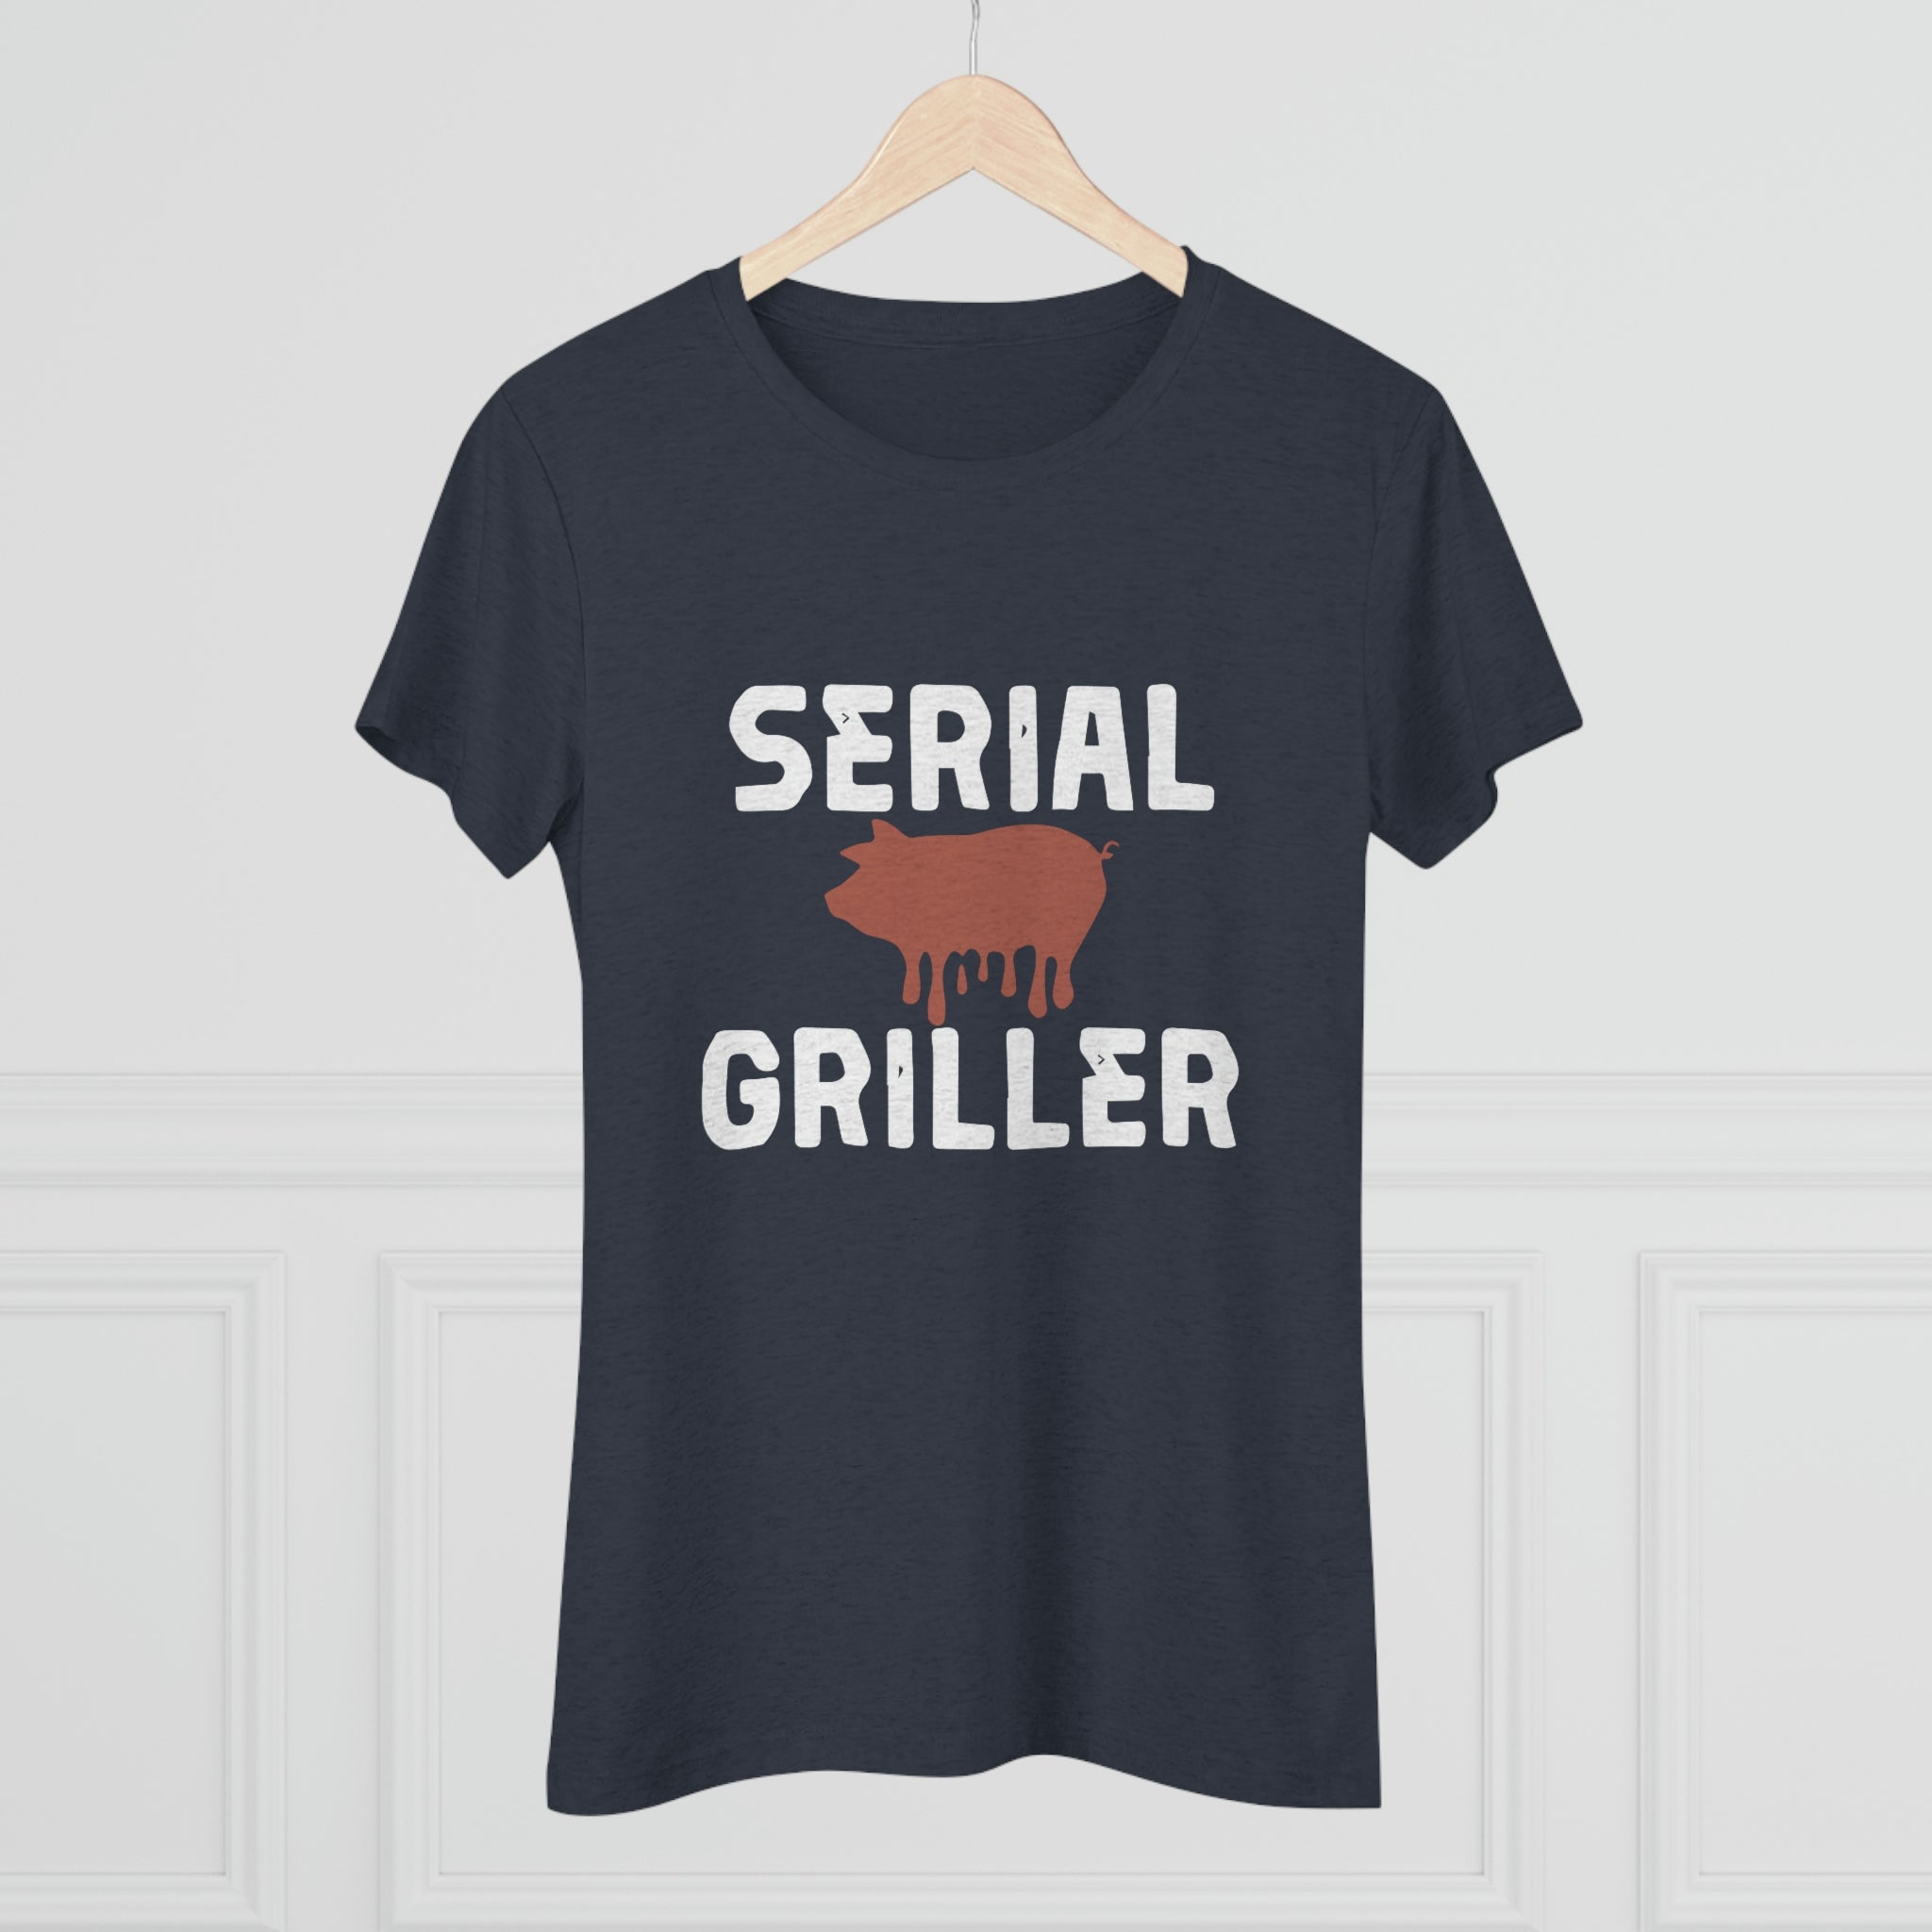 Serial Griller women's shirt